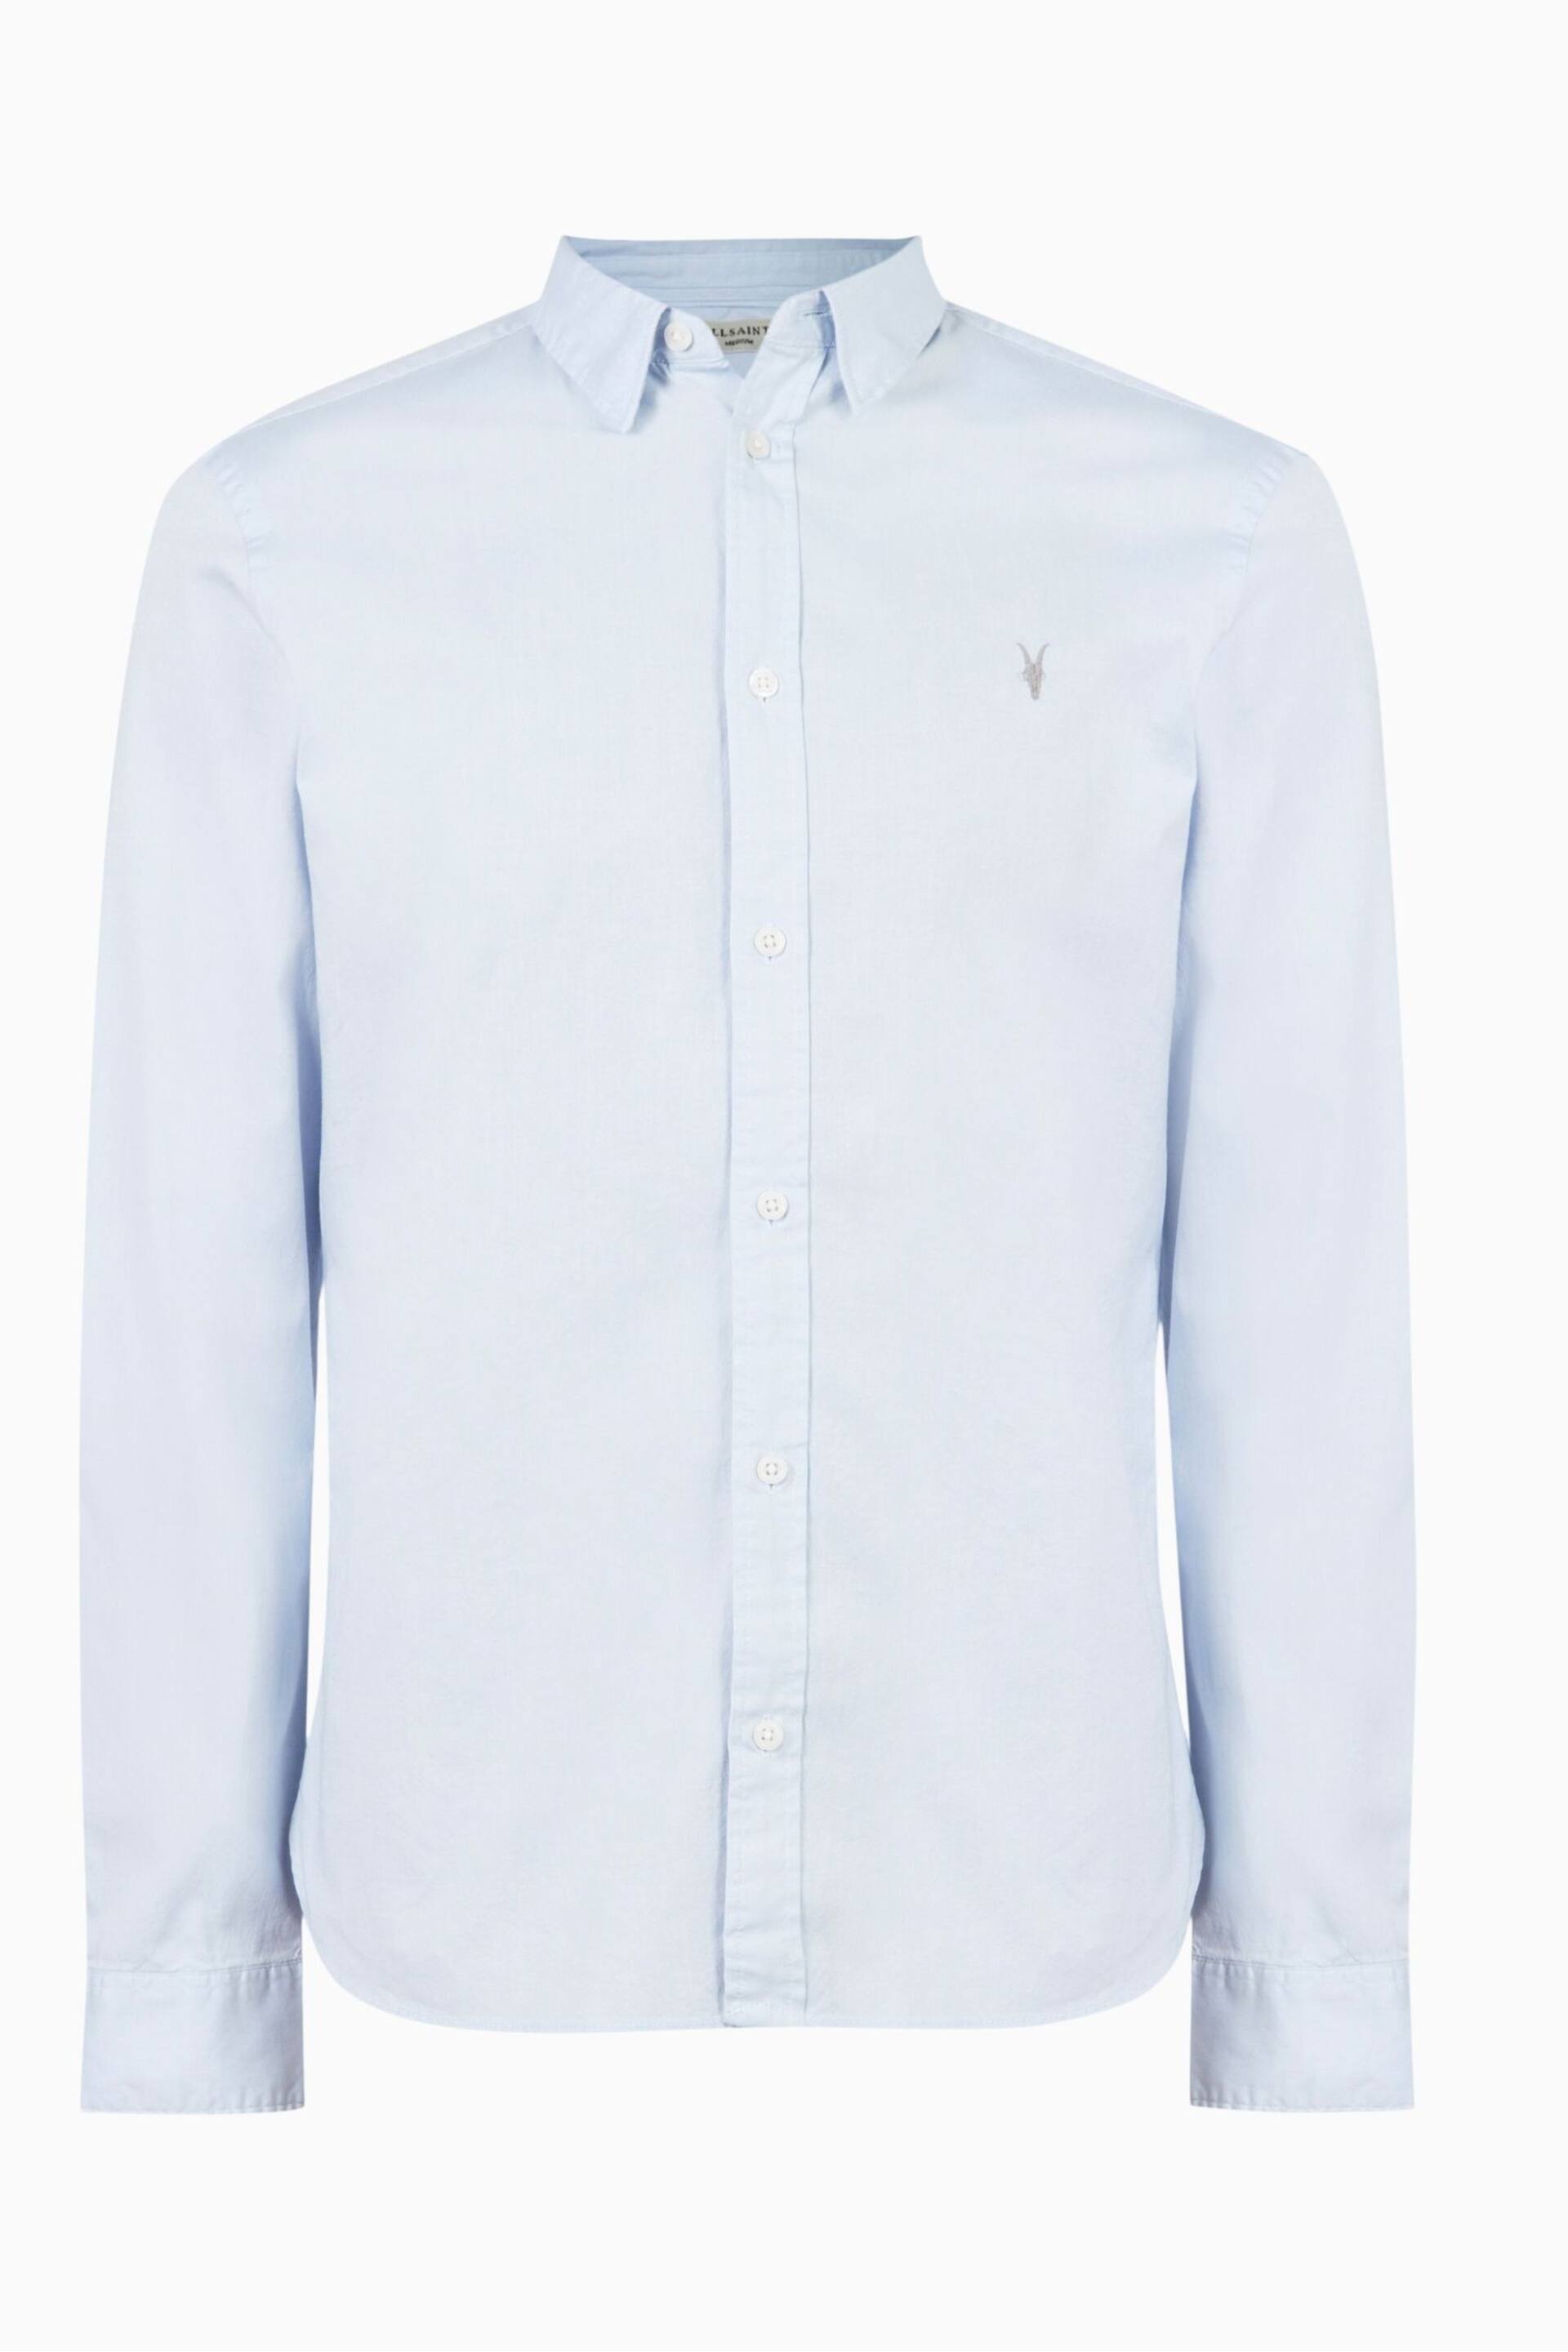 AllSaints Light Blue Hawthorne Long Sleeved Shirt - Image 5 of 5